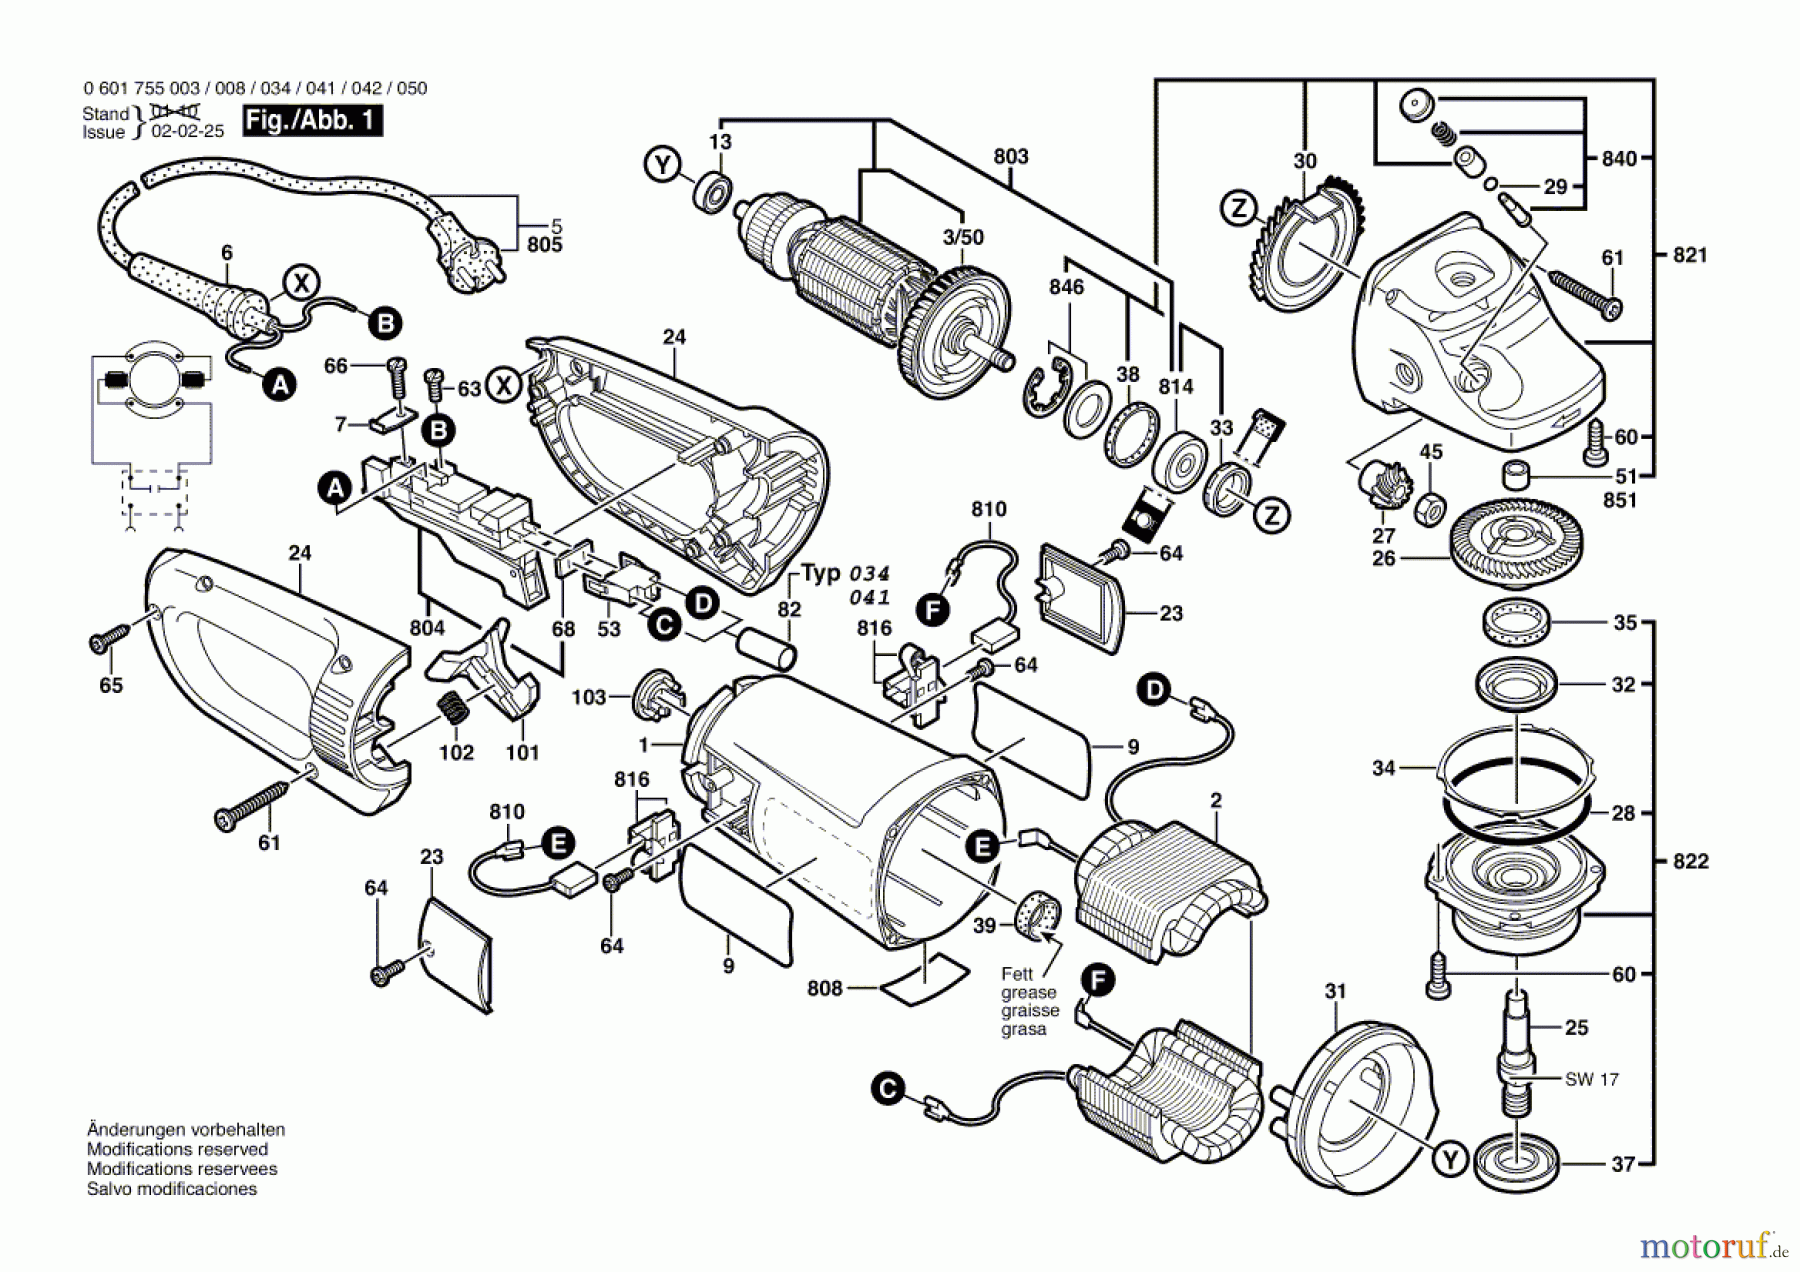  Bosch Werkzeug Winkelschleifer GWS 25-180 Seite 1